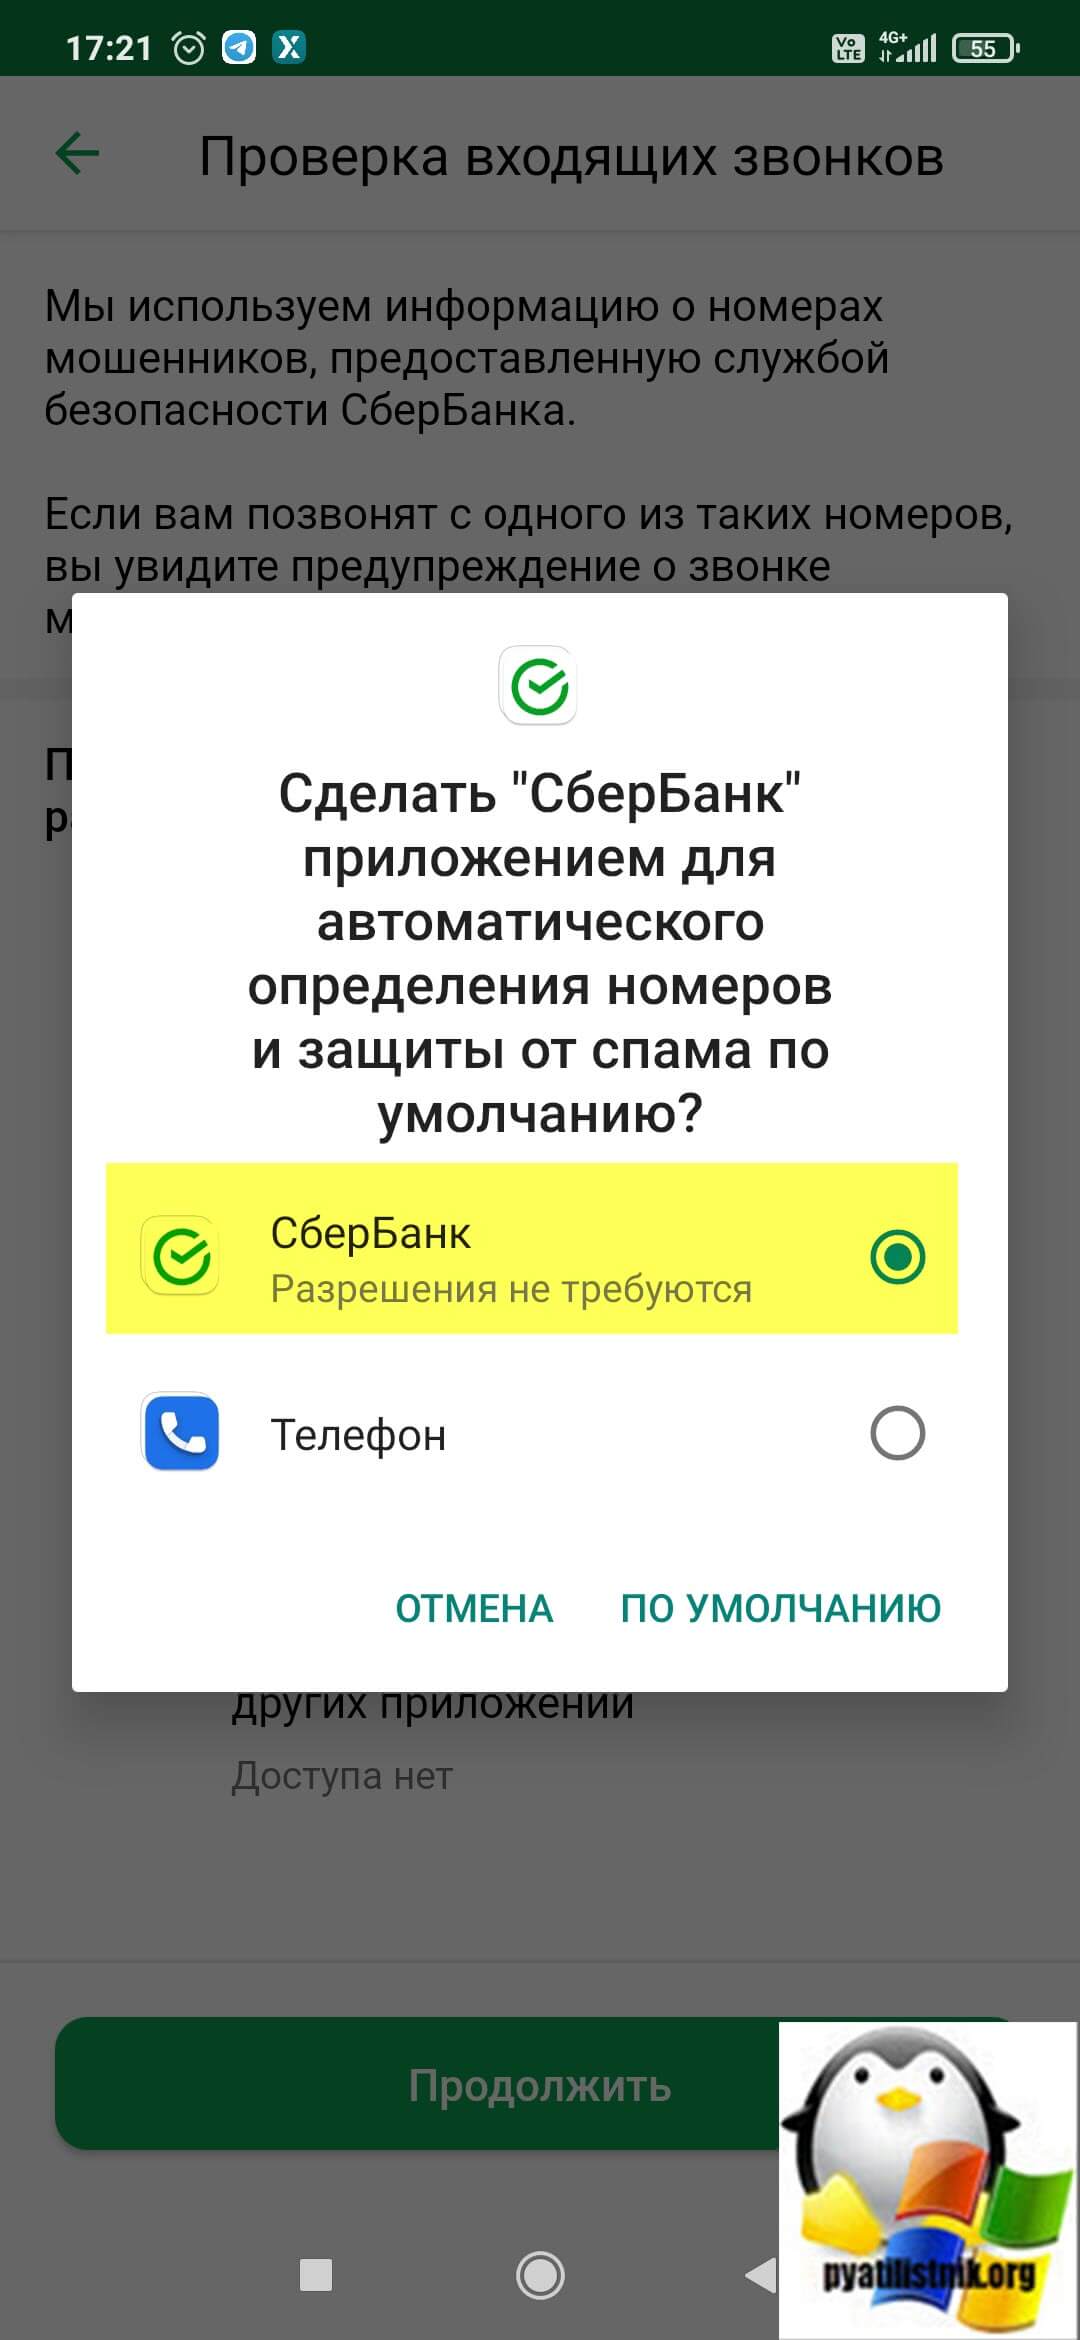 Выбираем в качестве приложения для автоматического определения номеров и защиты от спама по умолчанию "СберБанк"